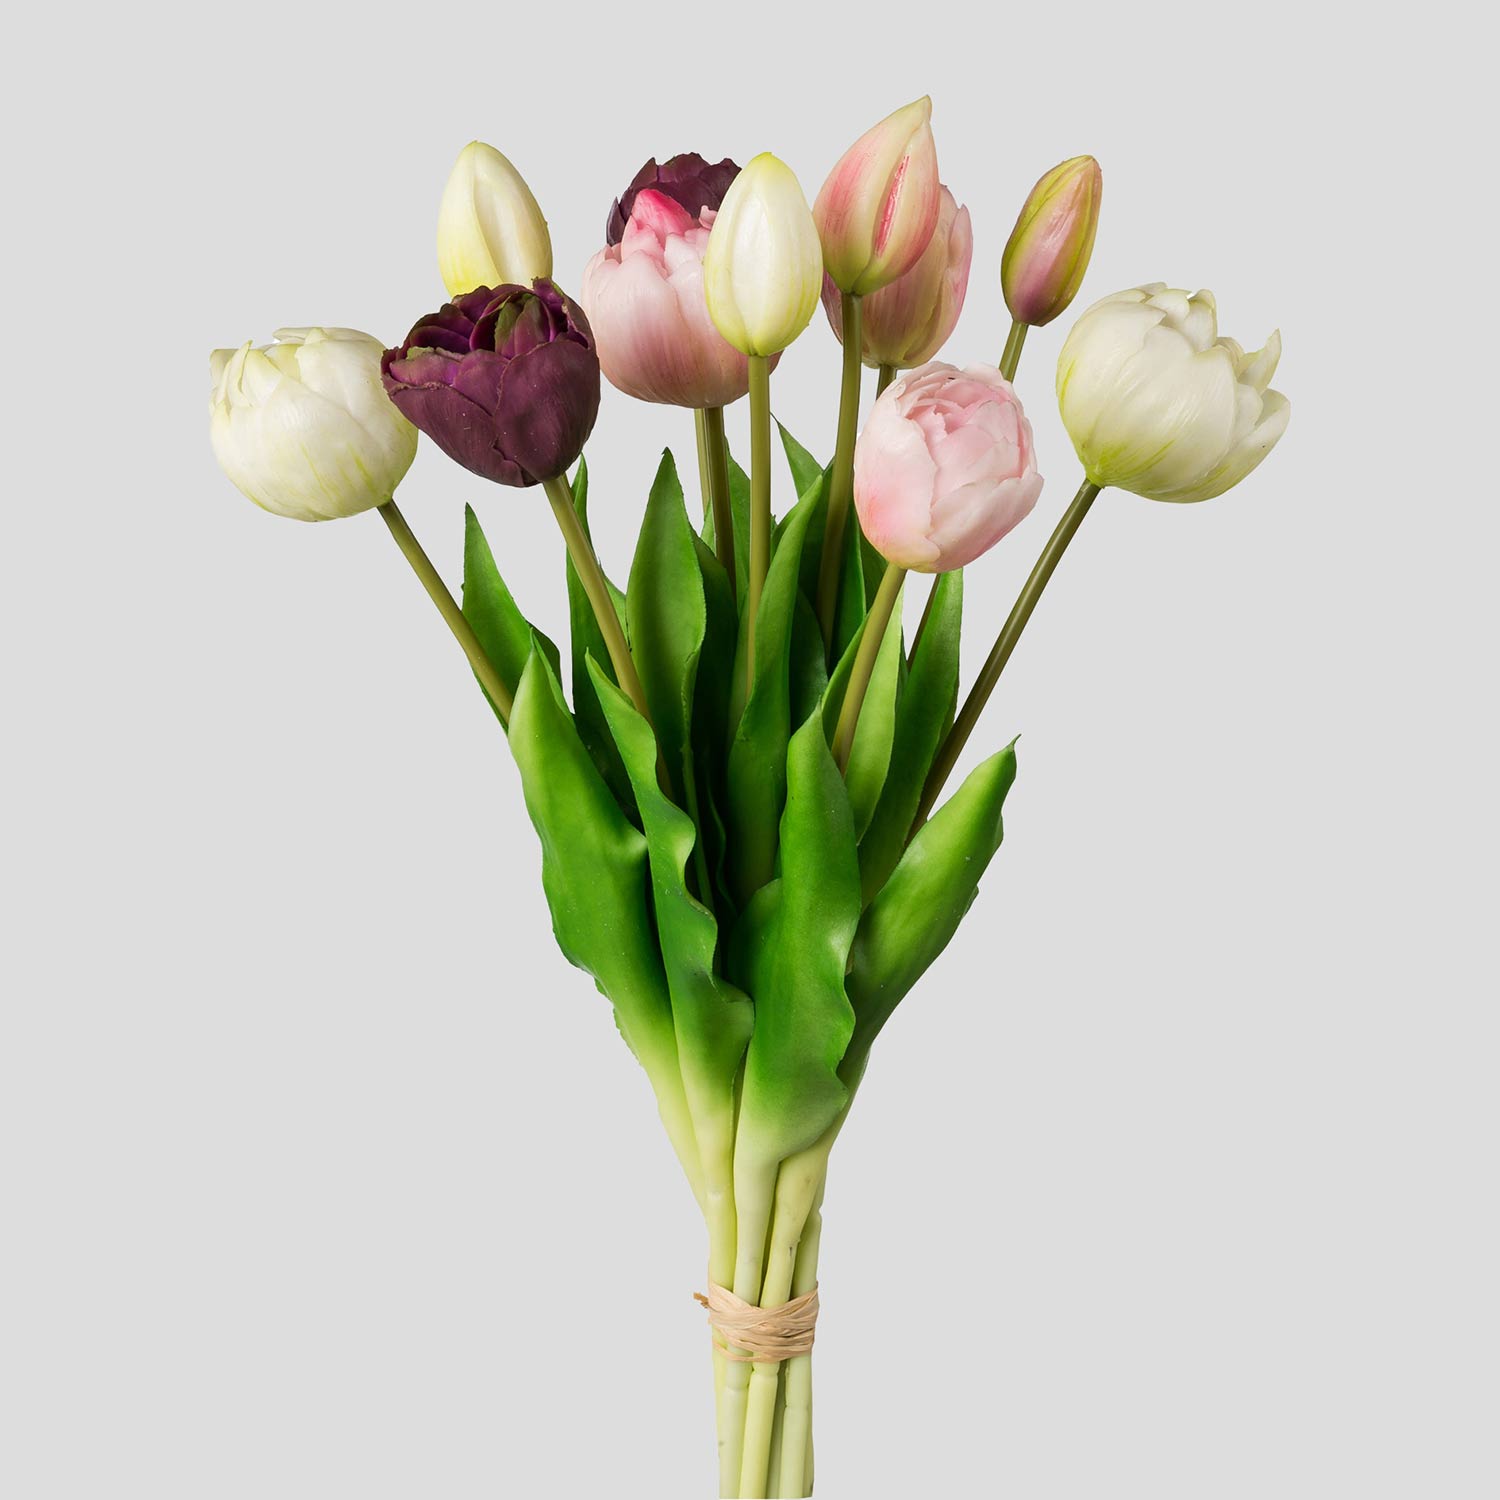 12 szálból álló, vegyes színű tulipáncsokor művirág, nyílt és bimbós virágfejekkel.